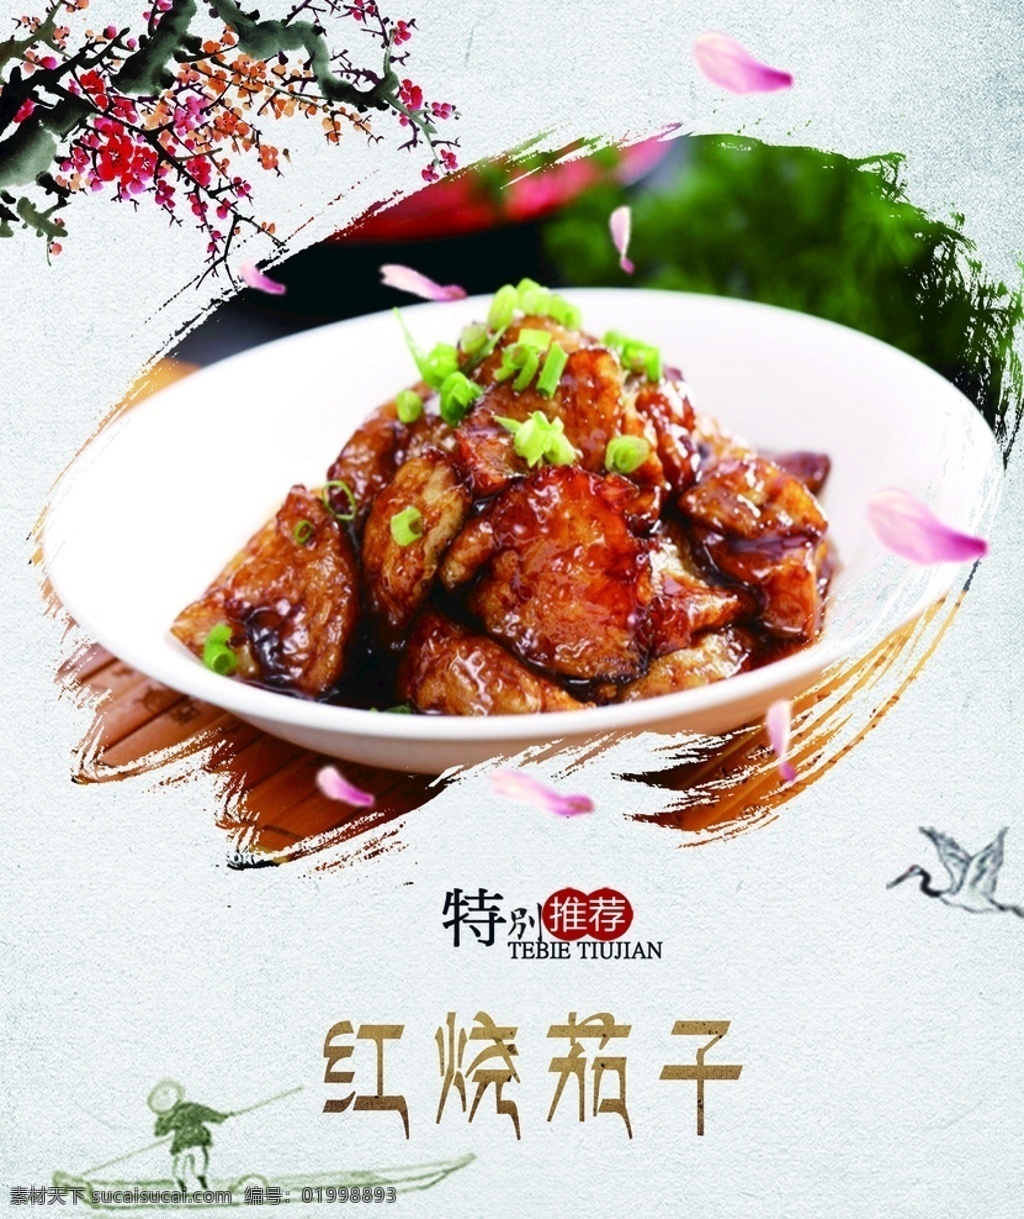 红烧茄子 食堂灯箱 菜品 水墨风 中国风 室外广告设计